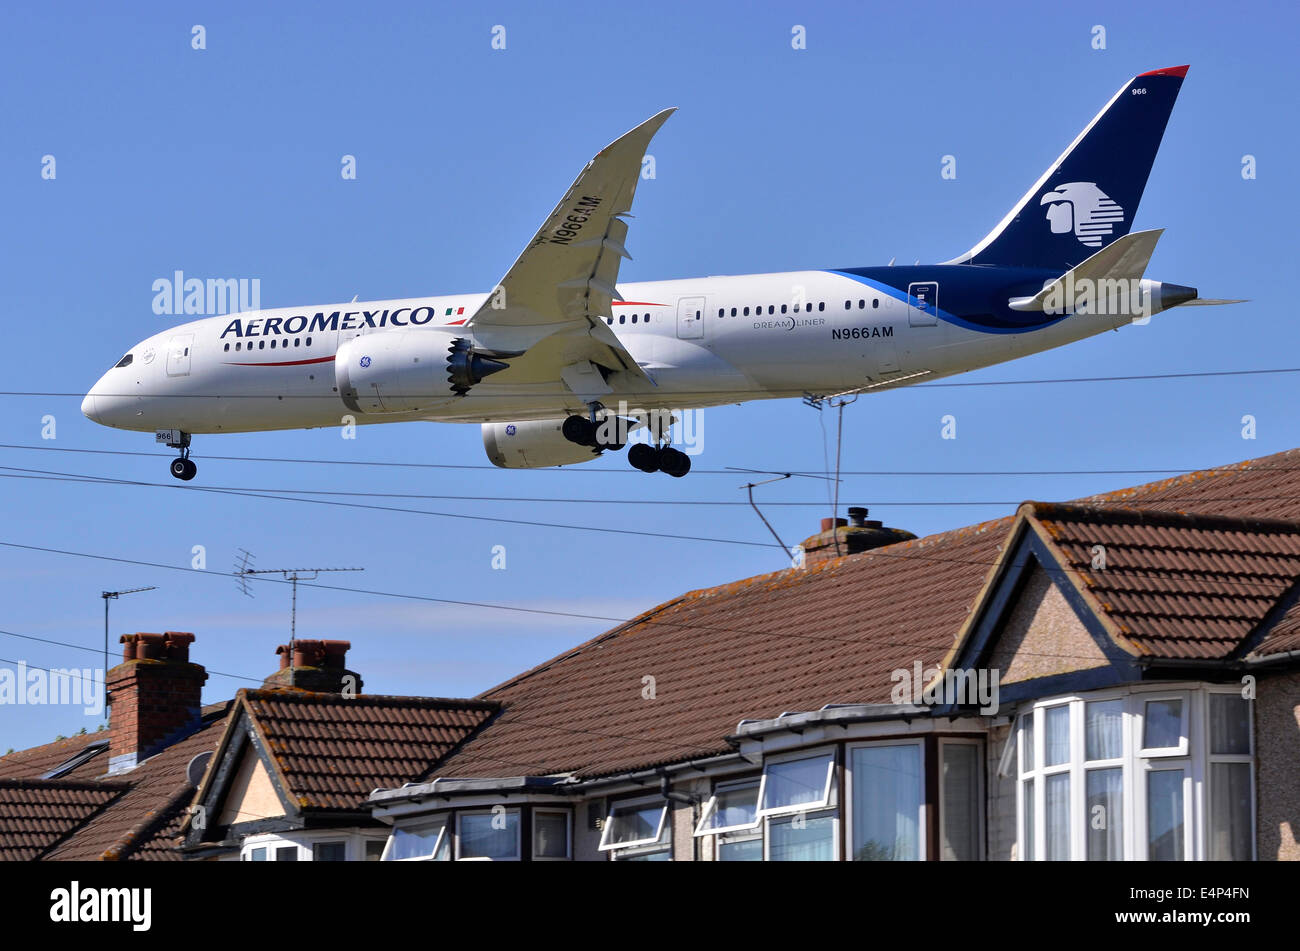 L'approche de la piste d'Heathrow par le Boeing 787 Dreamliner, Aeromexico, avion sur une faible approche à l'atterrissage de l'aéroport Heathrow de Londres, Royaume-Uni, avec Myrtle Avenue maisons en premier plan. Banque D'Images